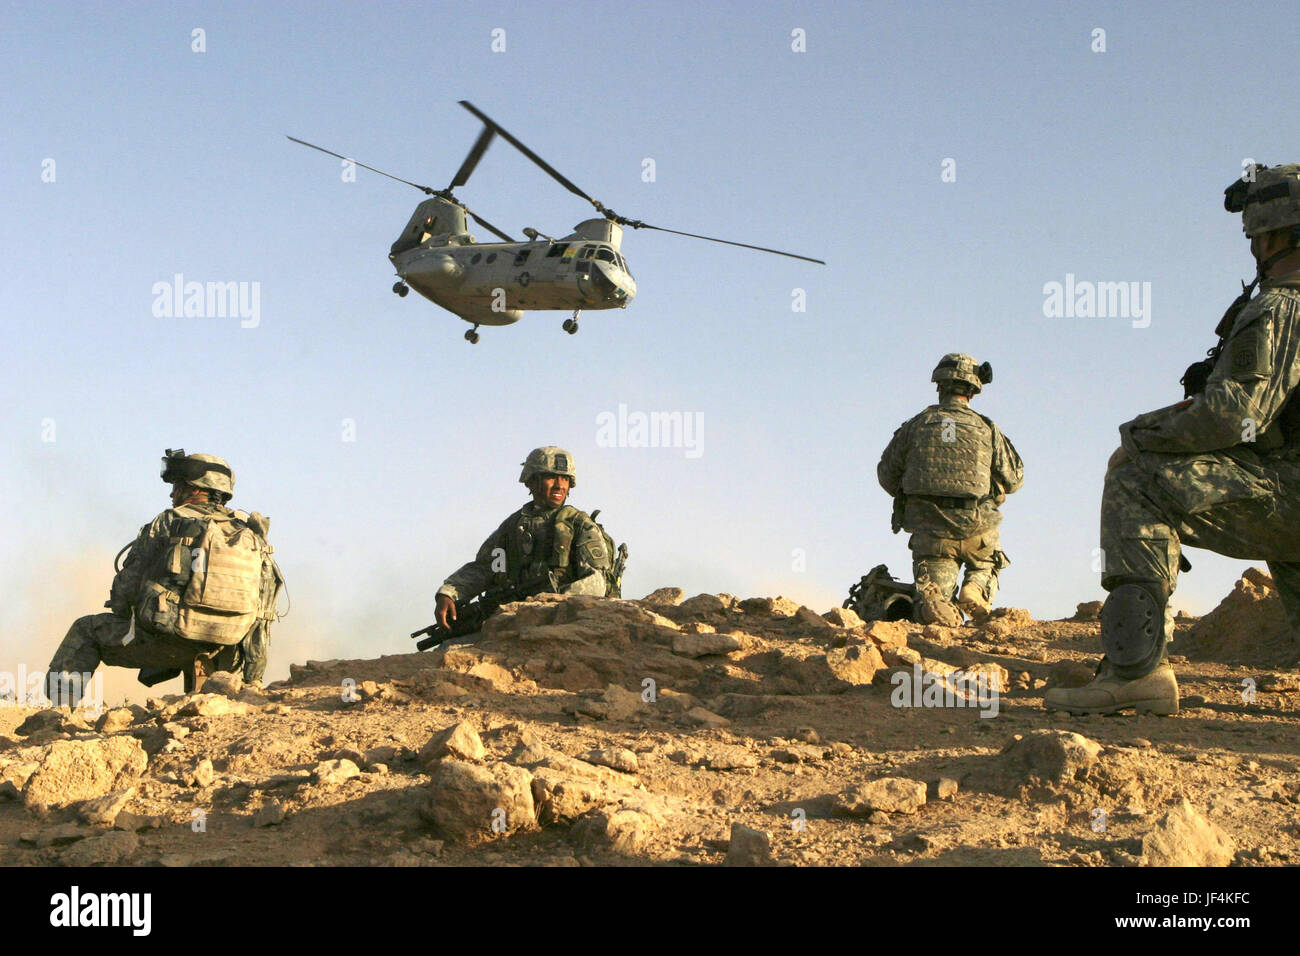 050921-M-8530M-011 U.S. Army Soldaten richten Sie eine Sicherheitszone nach der Landung in der Wüste zu Beginn einer Operation in Baghdaddi, Irak, am 21. September 2005.  Die Soldaten führen Aufstandsbekämpfung mit irakischen Sicherheitskräfte, ein sicheres Umfeld zu schaffen.  Die Soldaten sind Charlie Kompanie, 3. Bataillon, 504th Parachute Infantry Regiment zugewiesen.  DoD-Foto von Lance Cpl. Michael R. McMaugh, U.S. Marine Corps. (Freigegeben) Stockfoto